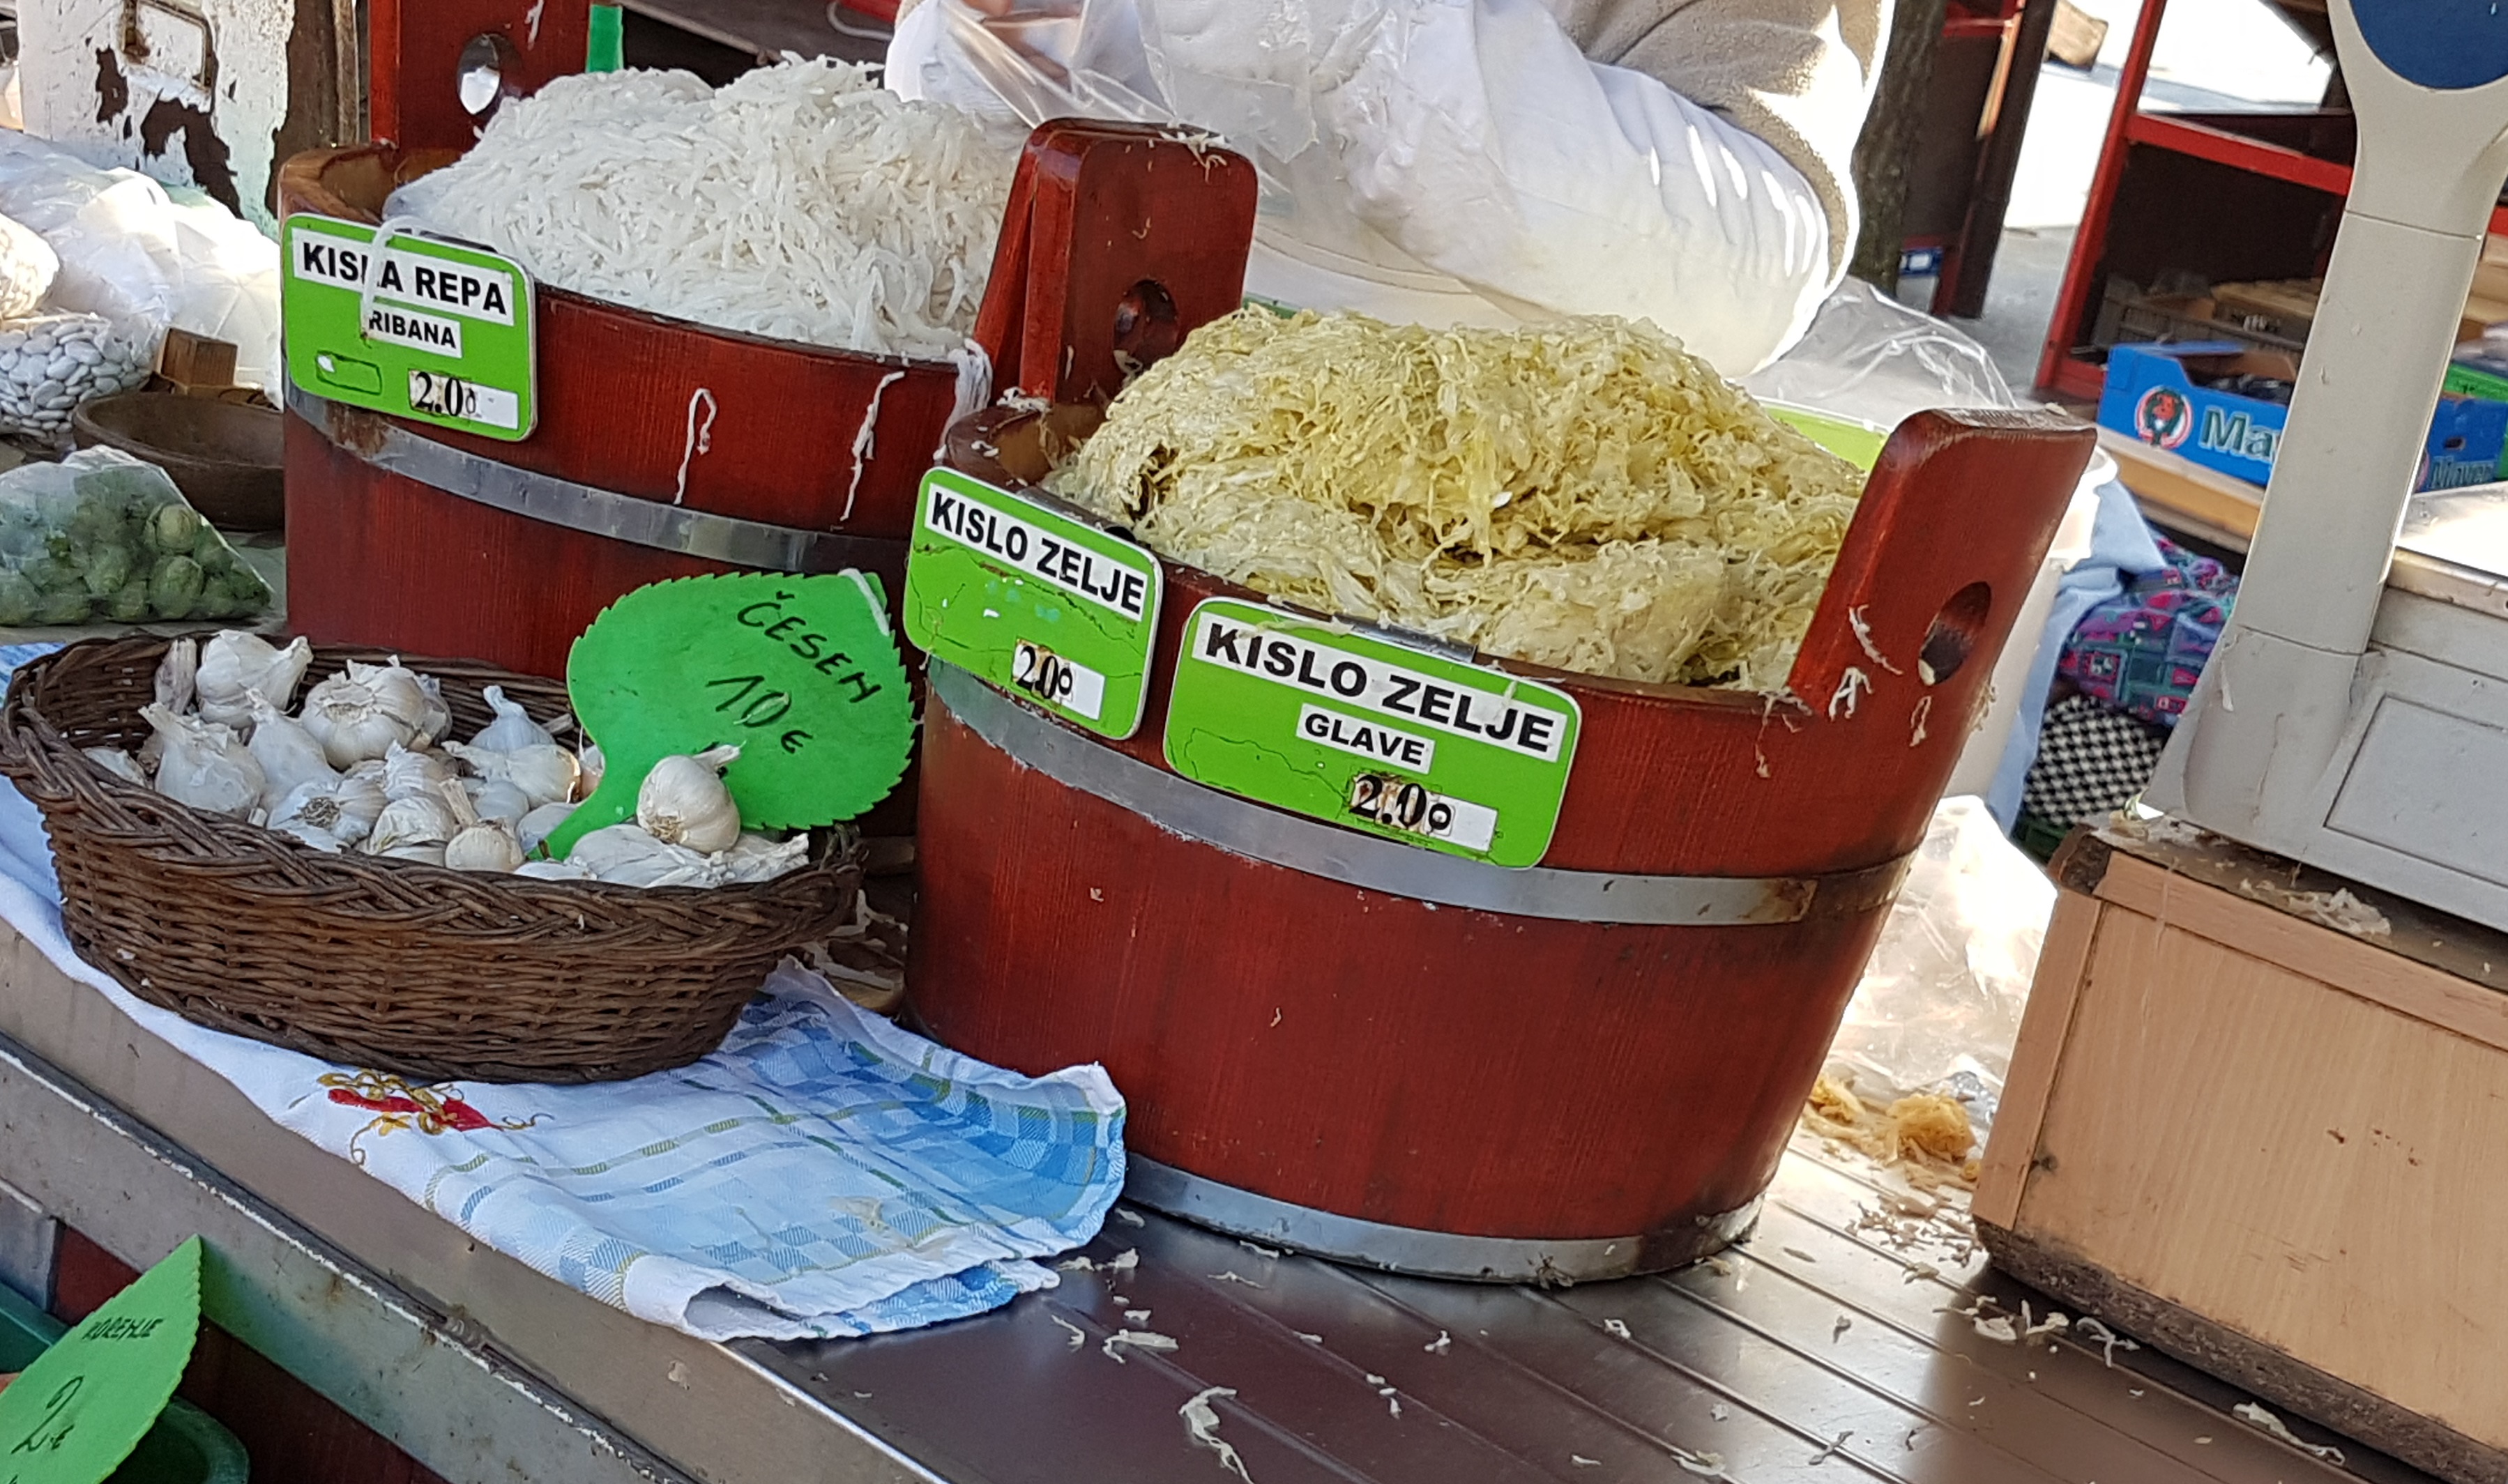 Selling sauerkraut on market